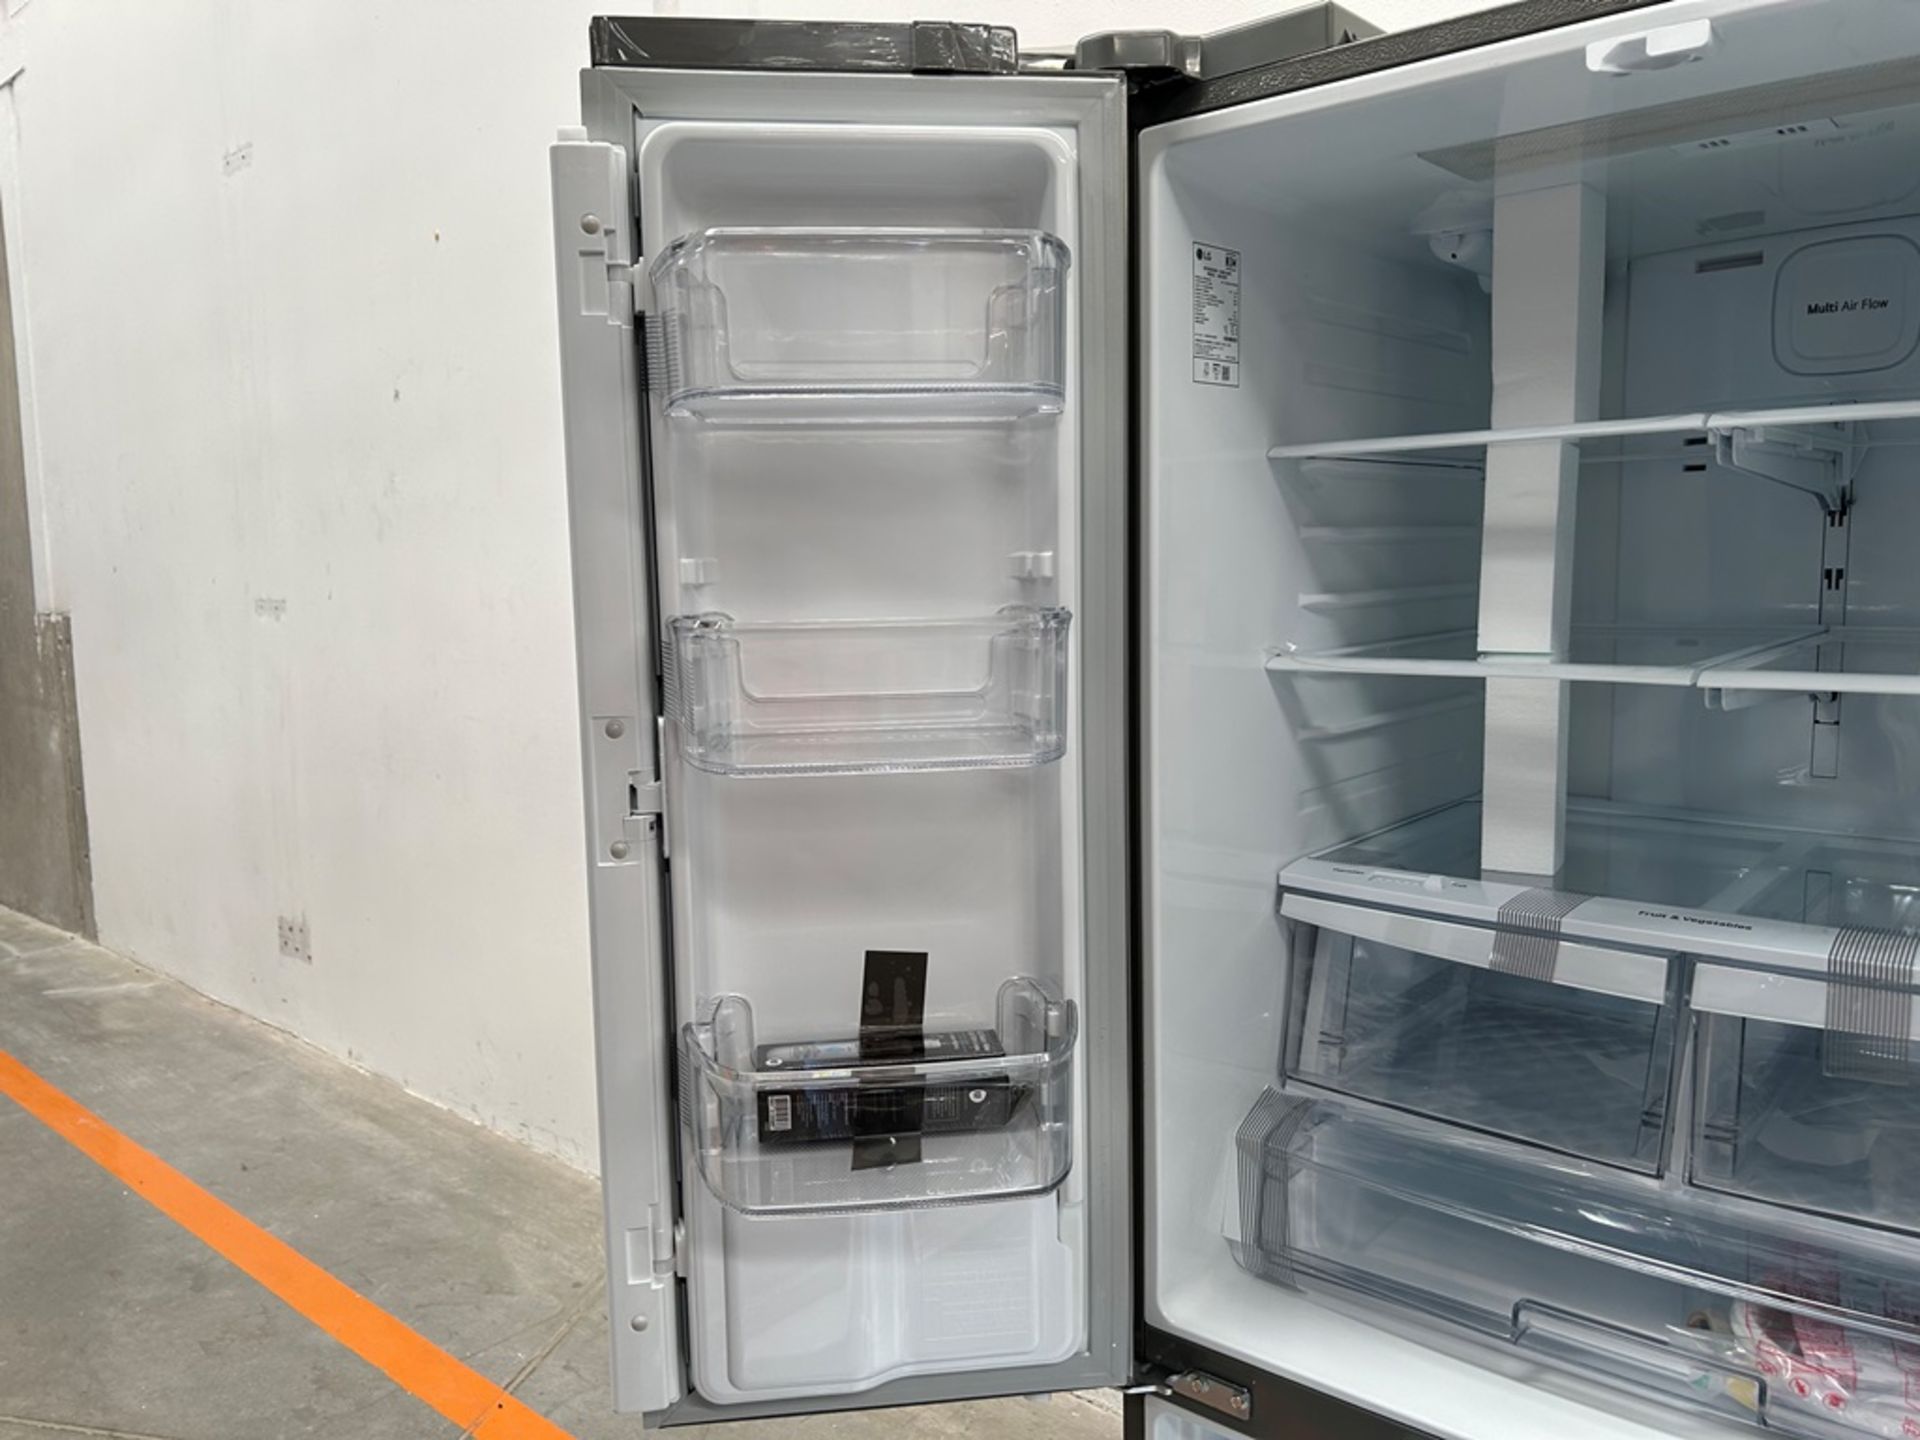 (NUEVO) Refrigerador con dispensador de agua Marca LG, Modelo GM22SGPK, Serie 28061, Color GRIS - Image 6 of 11